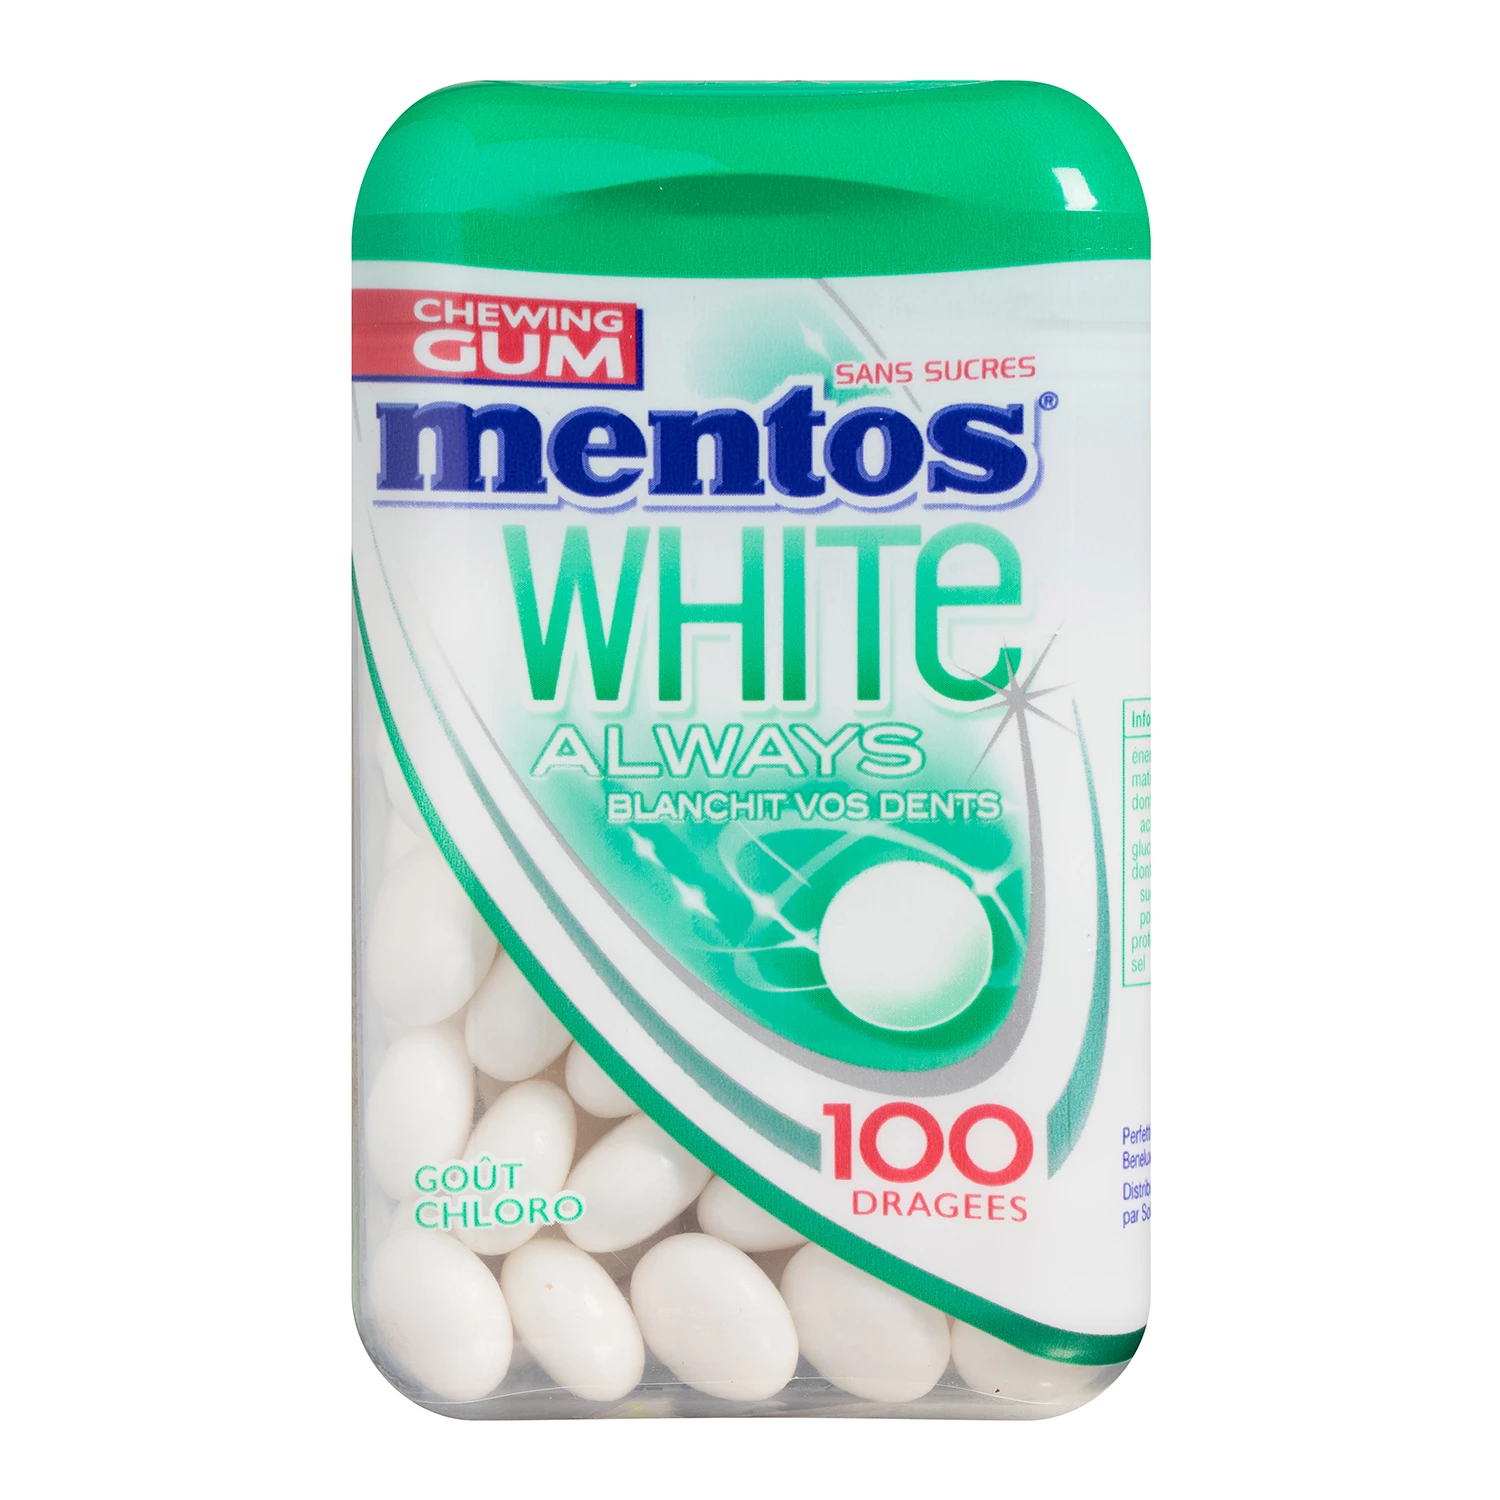 Chewing gum white always goût chloro sans sucres x100 - MENTOS